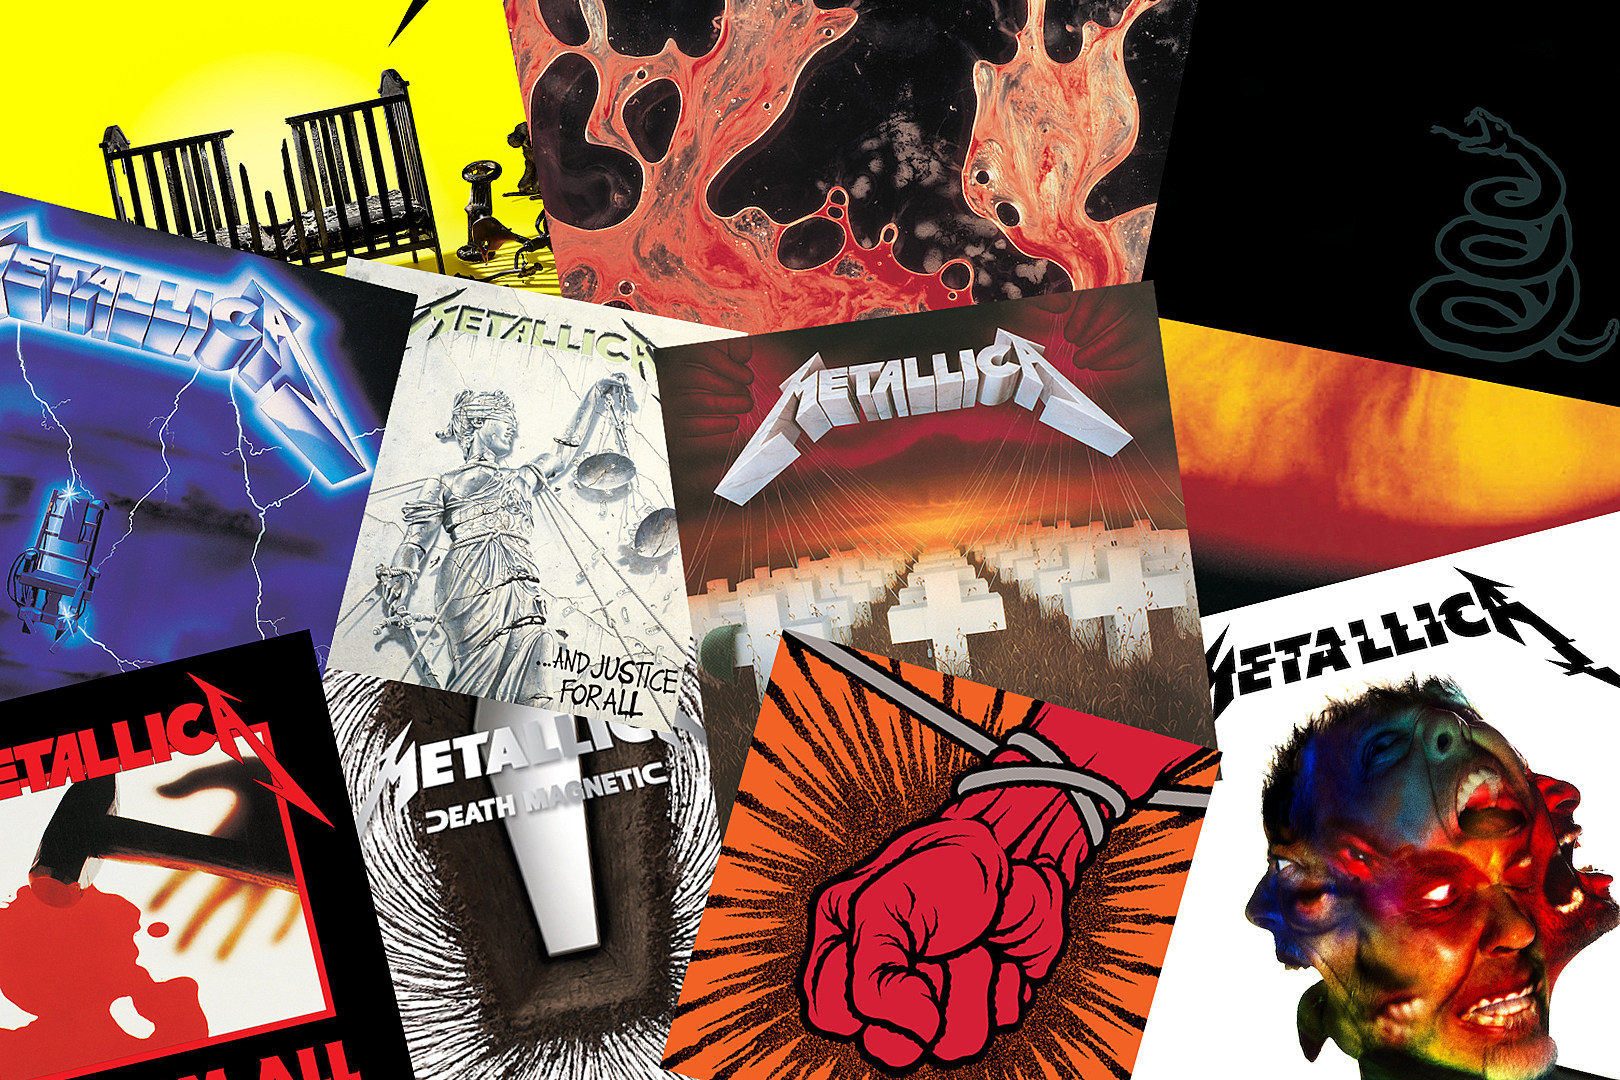 Metallica - Kill 'Em All 2008 U.S. 45 RPM half speed mastered 2 LP set